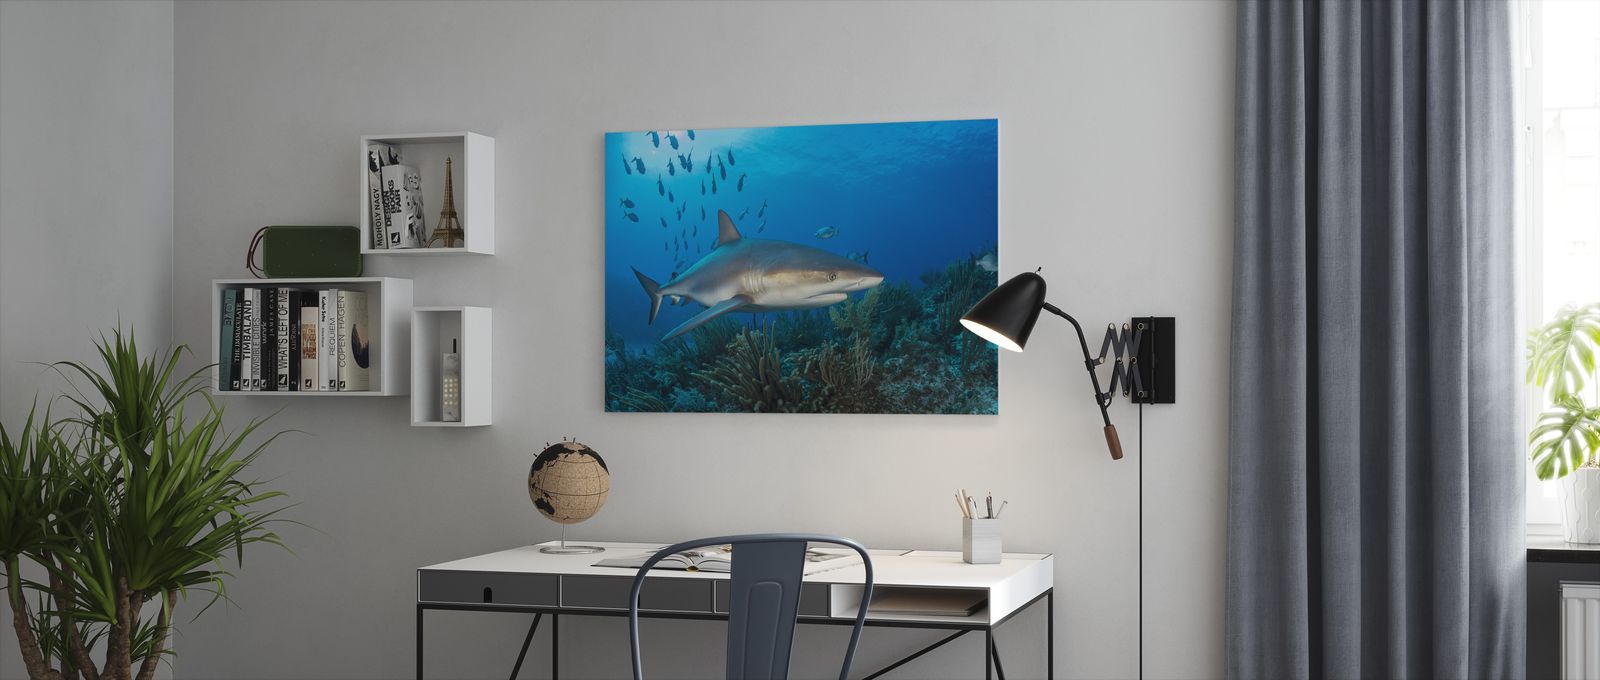 特売 アートパネル 10cm単位でサイズオーダーできる 絵画 壁掛け インテリア 壁飾り キャンバス アート ウォール ペレスメジロザメ 鮫 サメ 海 即日出荷 Inquiport Net